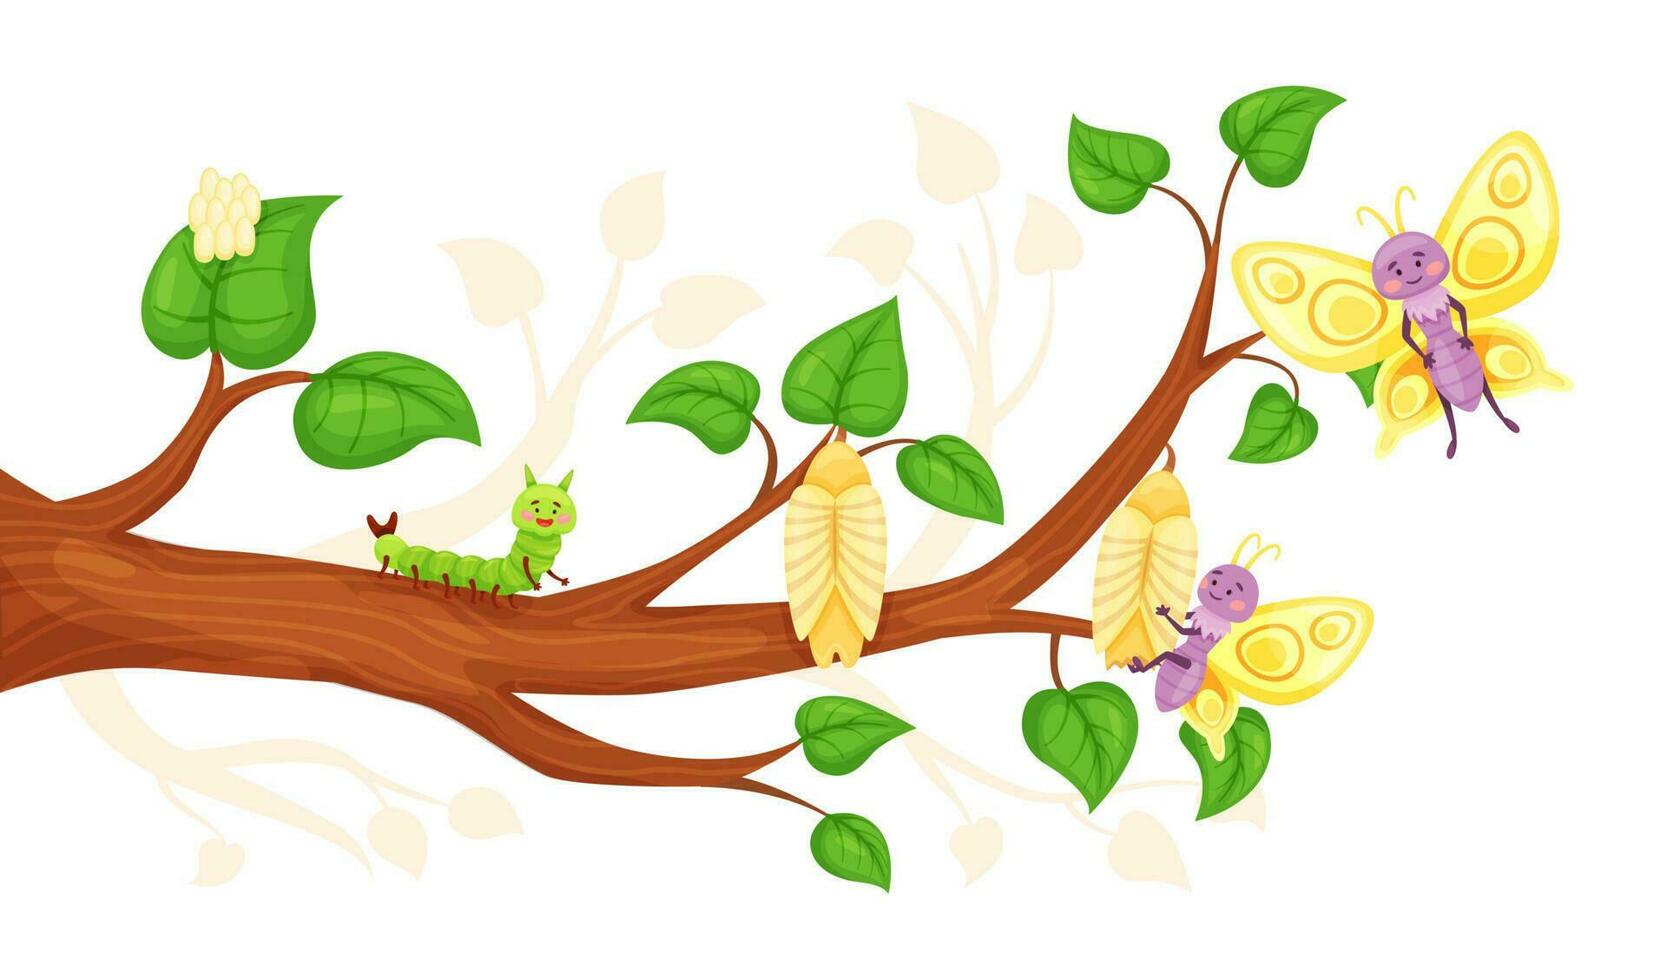 Karikatur Schmetterling Leben Zyklus, Ei, Larve, Puppe, Insekten Entwicklung. Insekt Metamorphose von Raupe zu Schmetterlinge Vektor Illustration